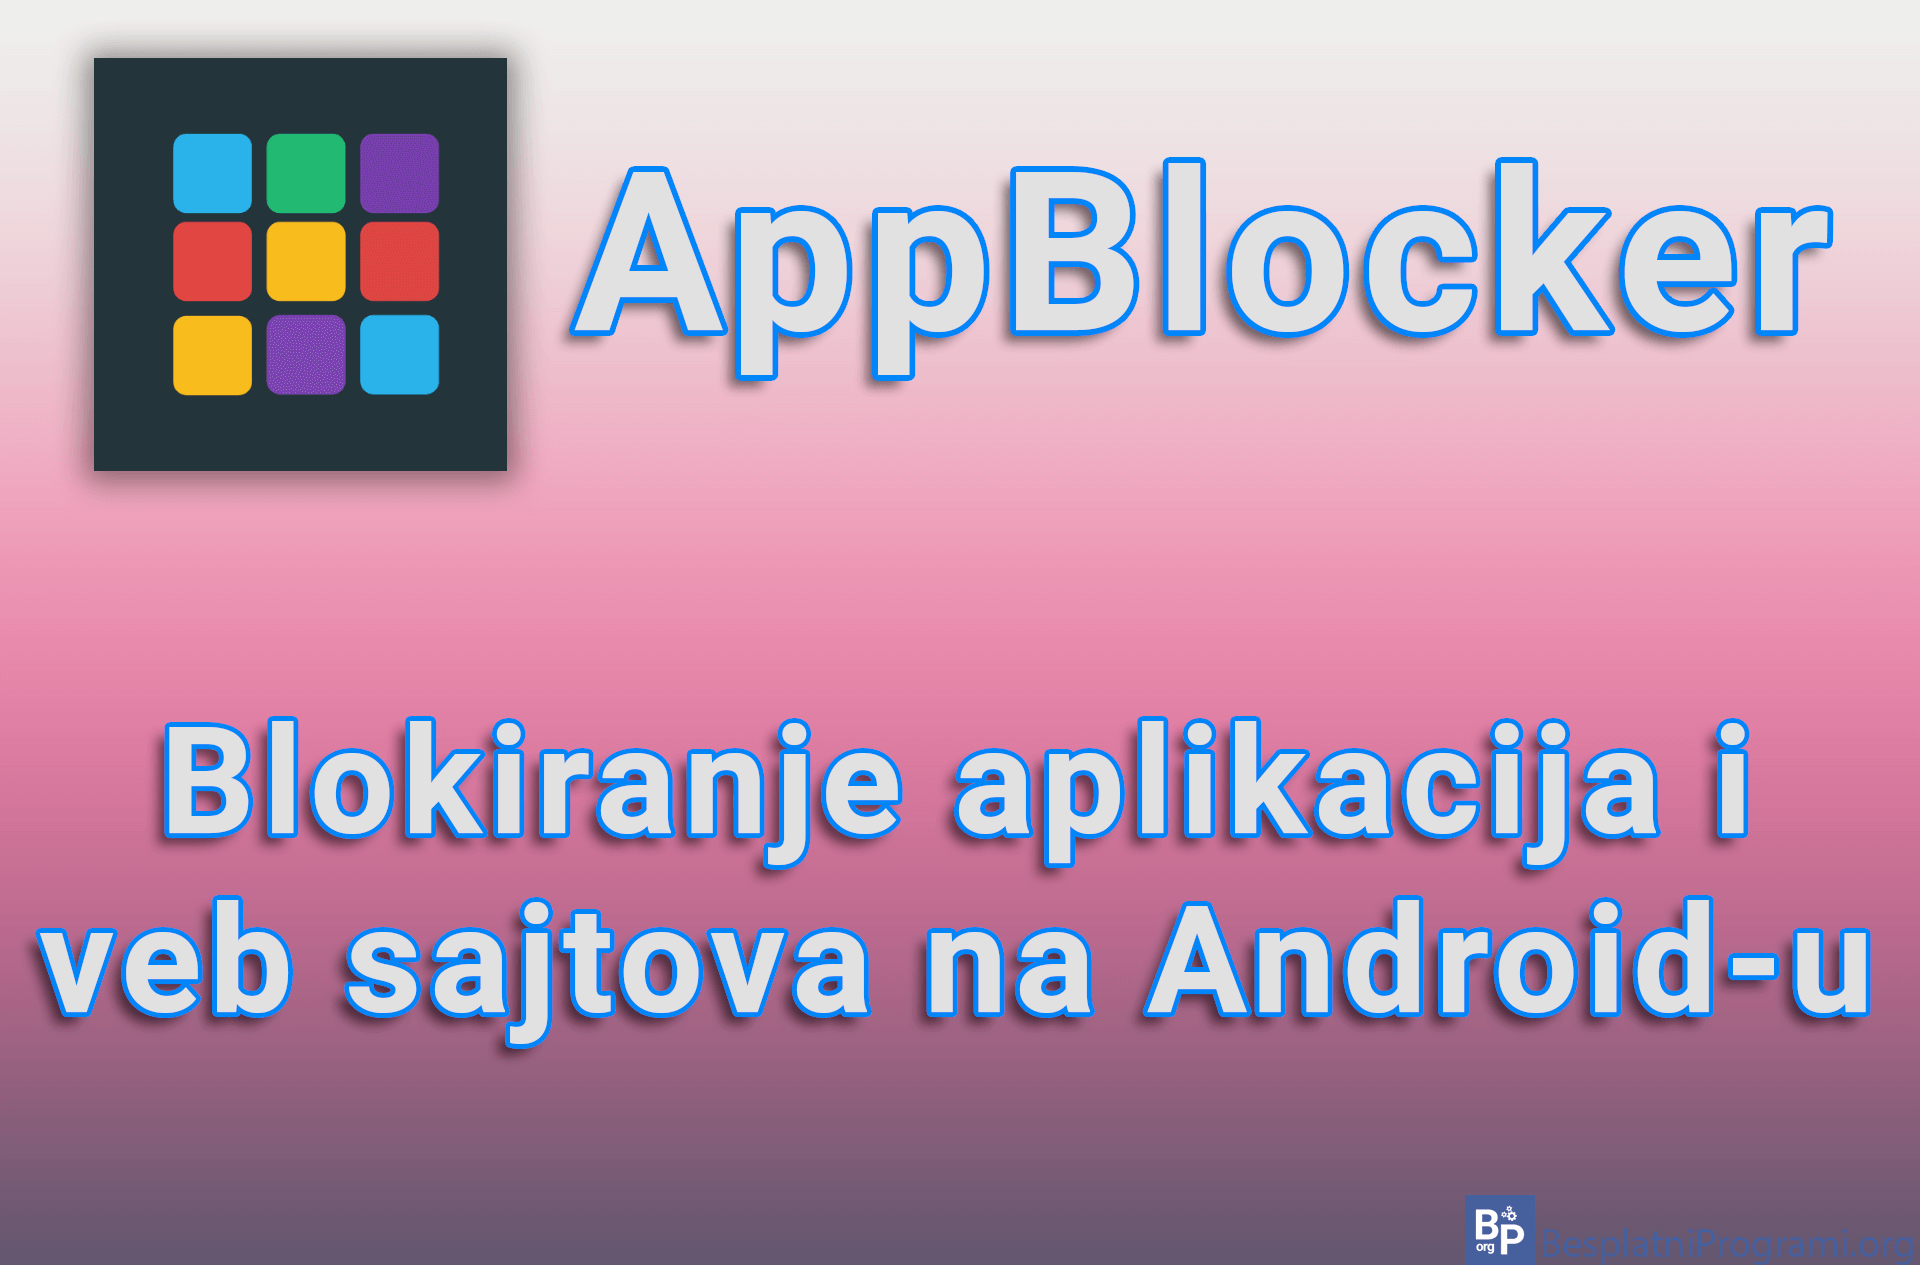 AppBlocker - Blokiranje aplikacija i veb sajtova na Android-u